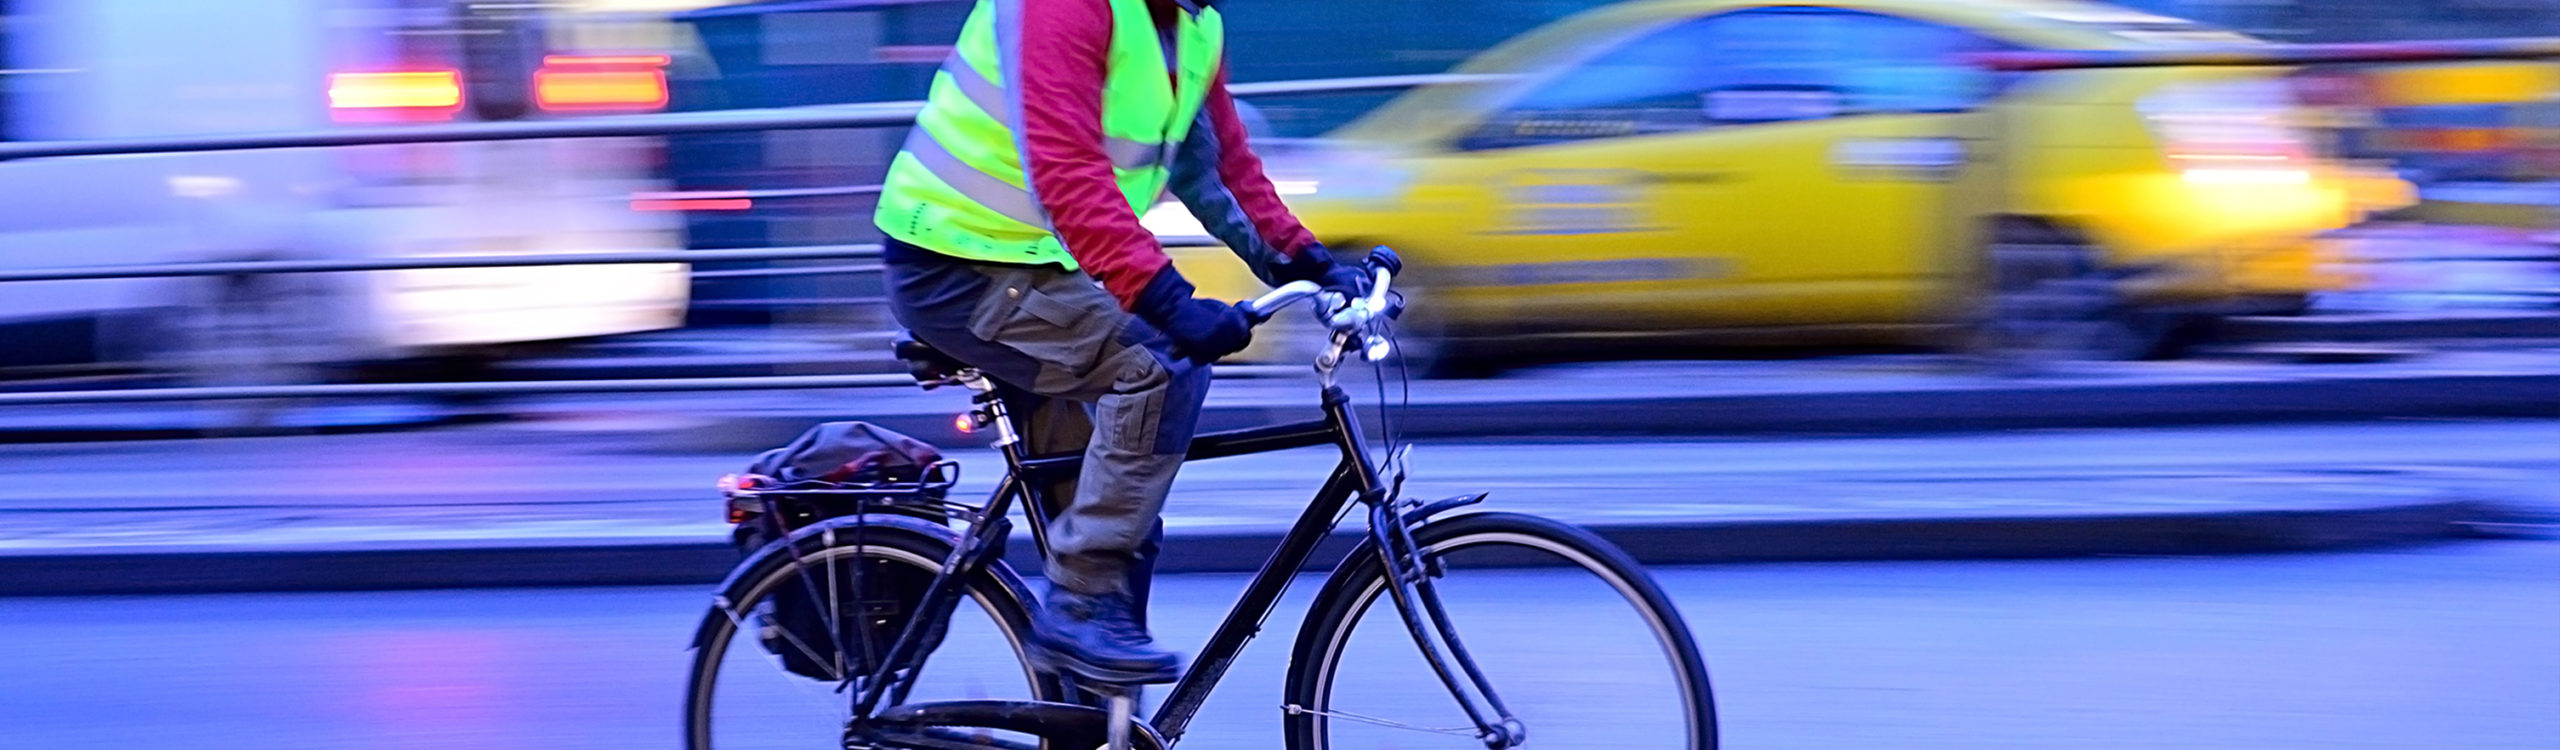 Une campagne pour encourager le port du gilet de sécurité à vélo